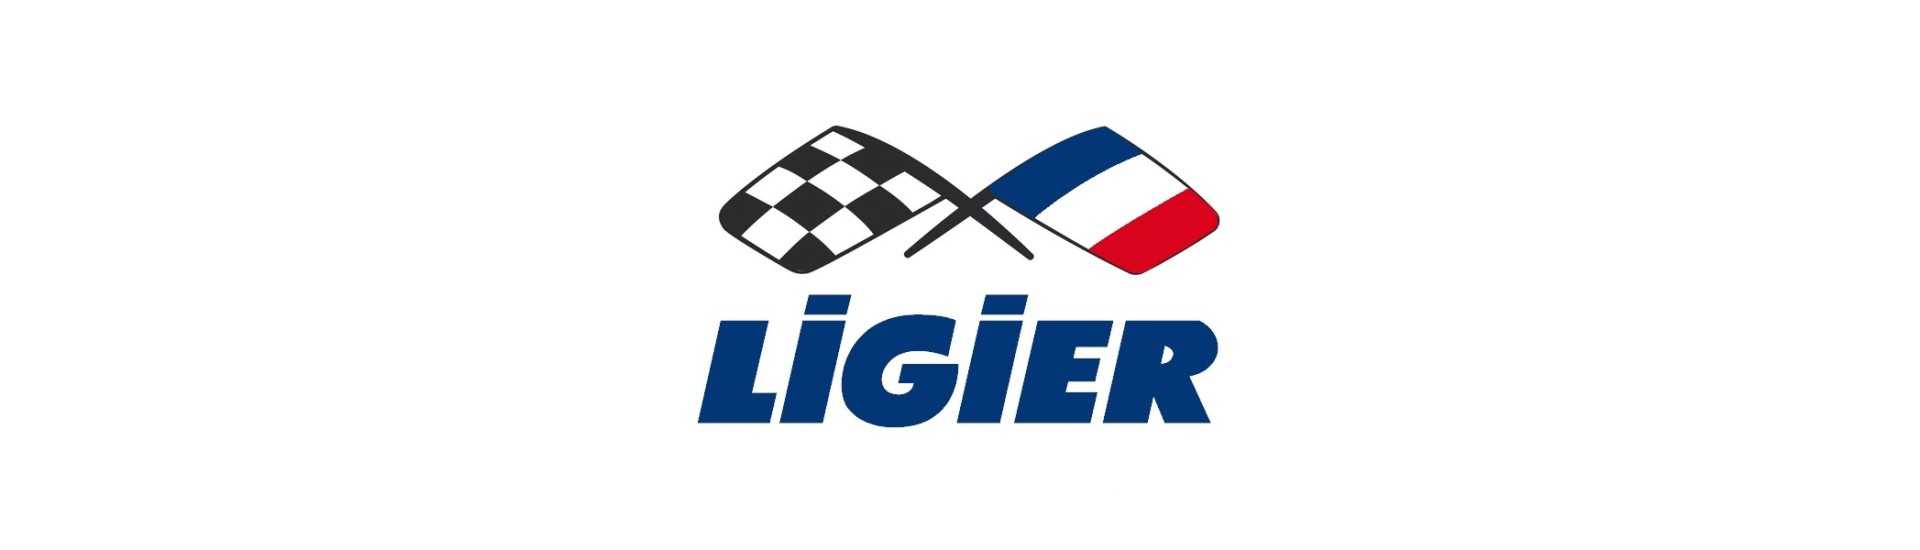 Höhere Fahrt zum besten Preis für Auto ohne Lizenz Ligier